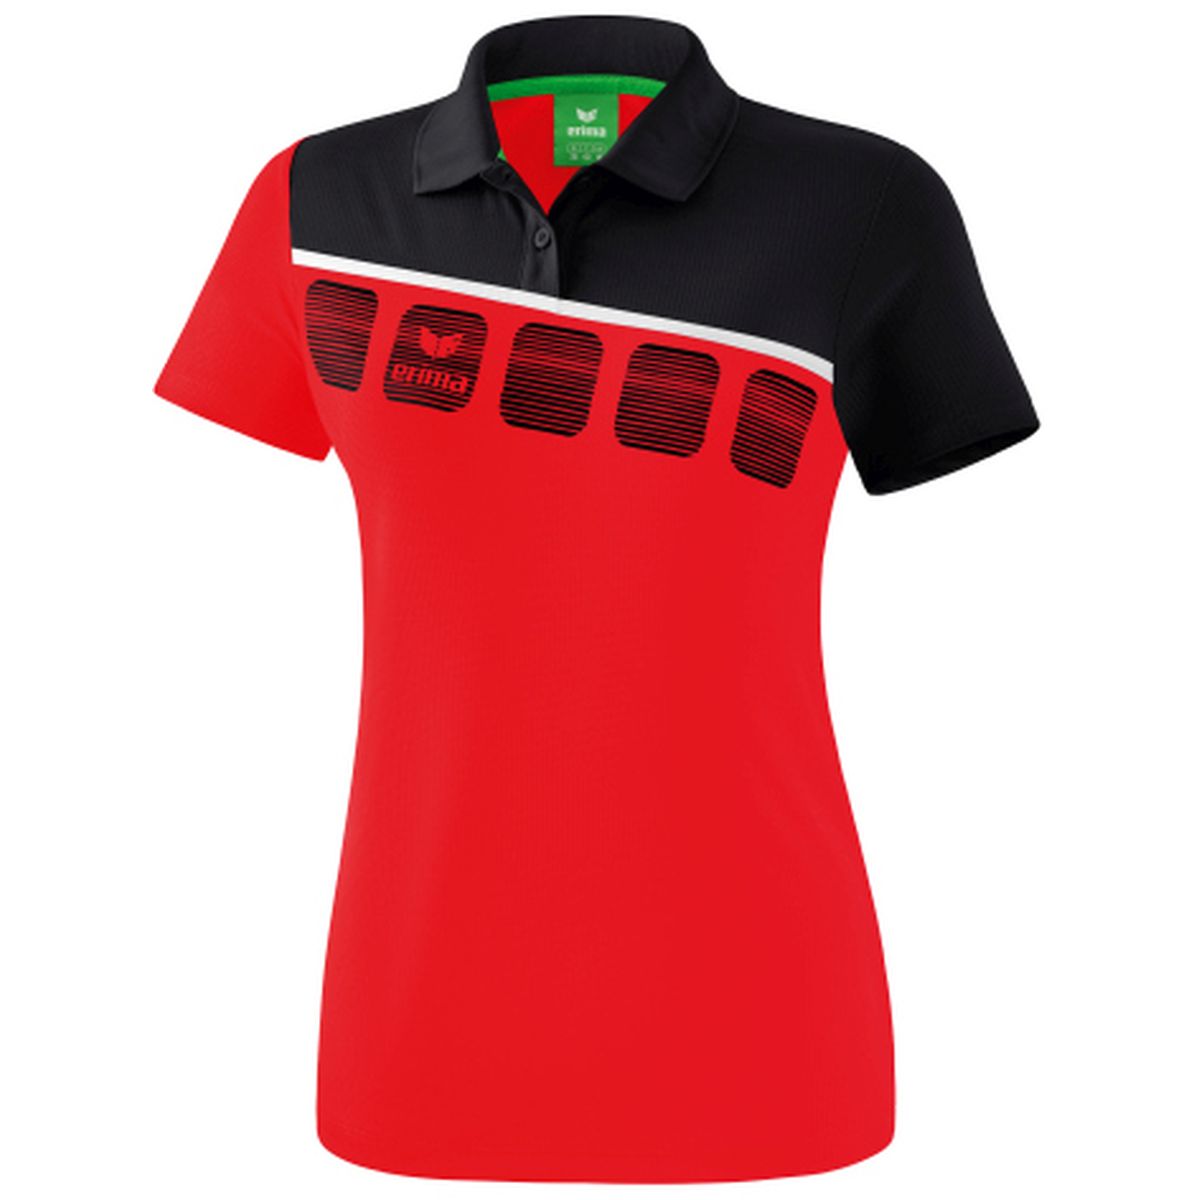 Erima 5-C Damen Poloshirt